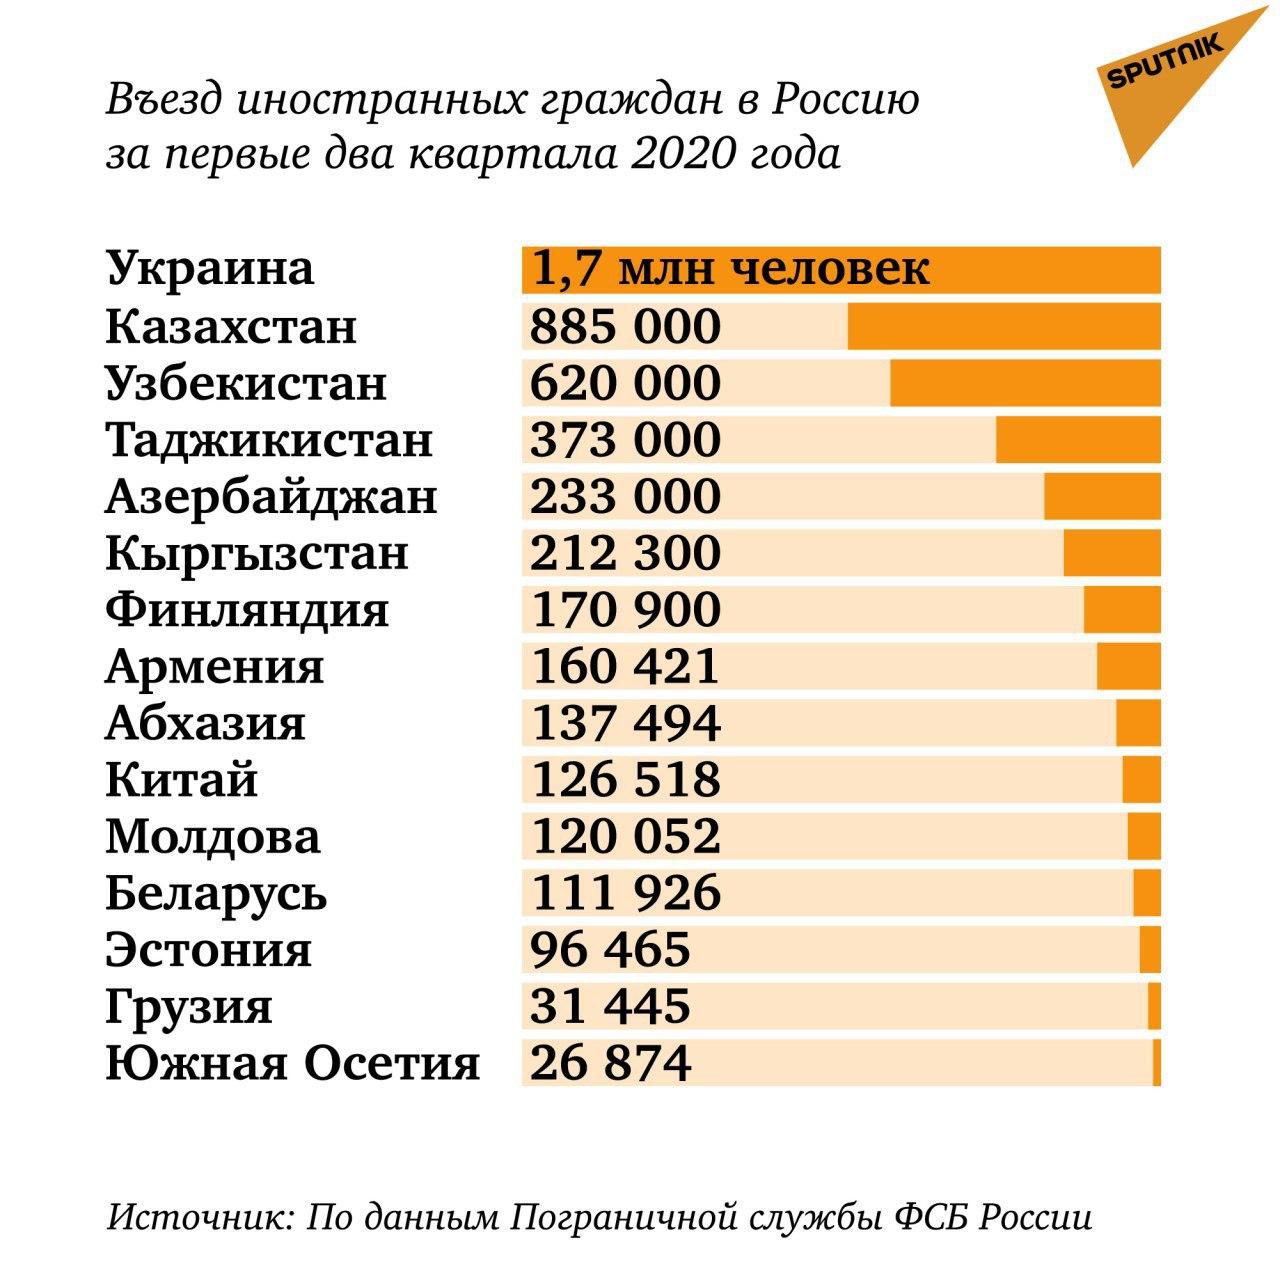 Количество переехать. Количество мигрантов в России по странам. Статистика стран за Россию. Страны по миграции. Число мигрантов в России по годам.